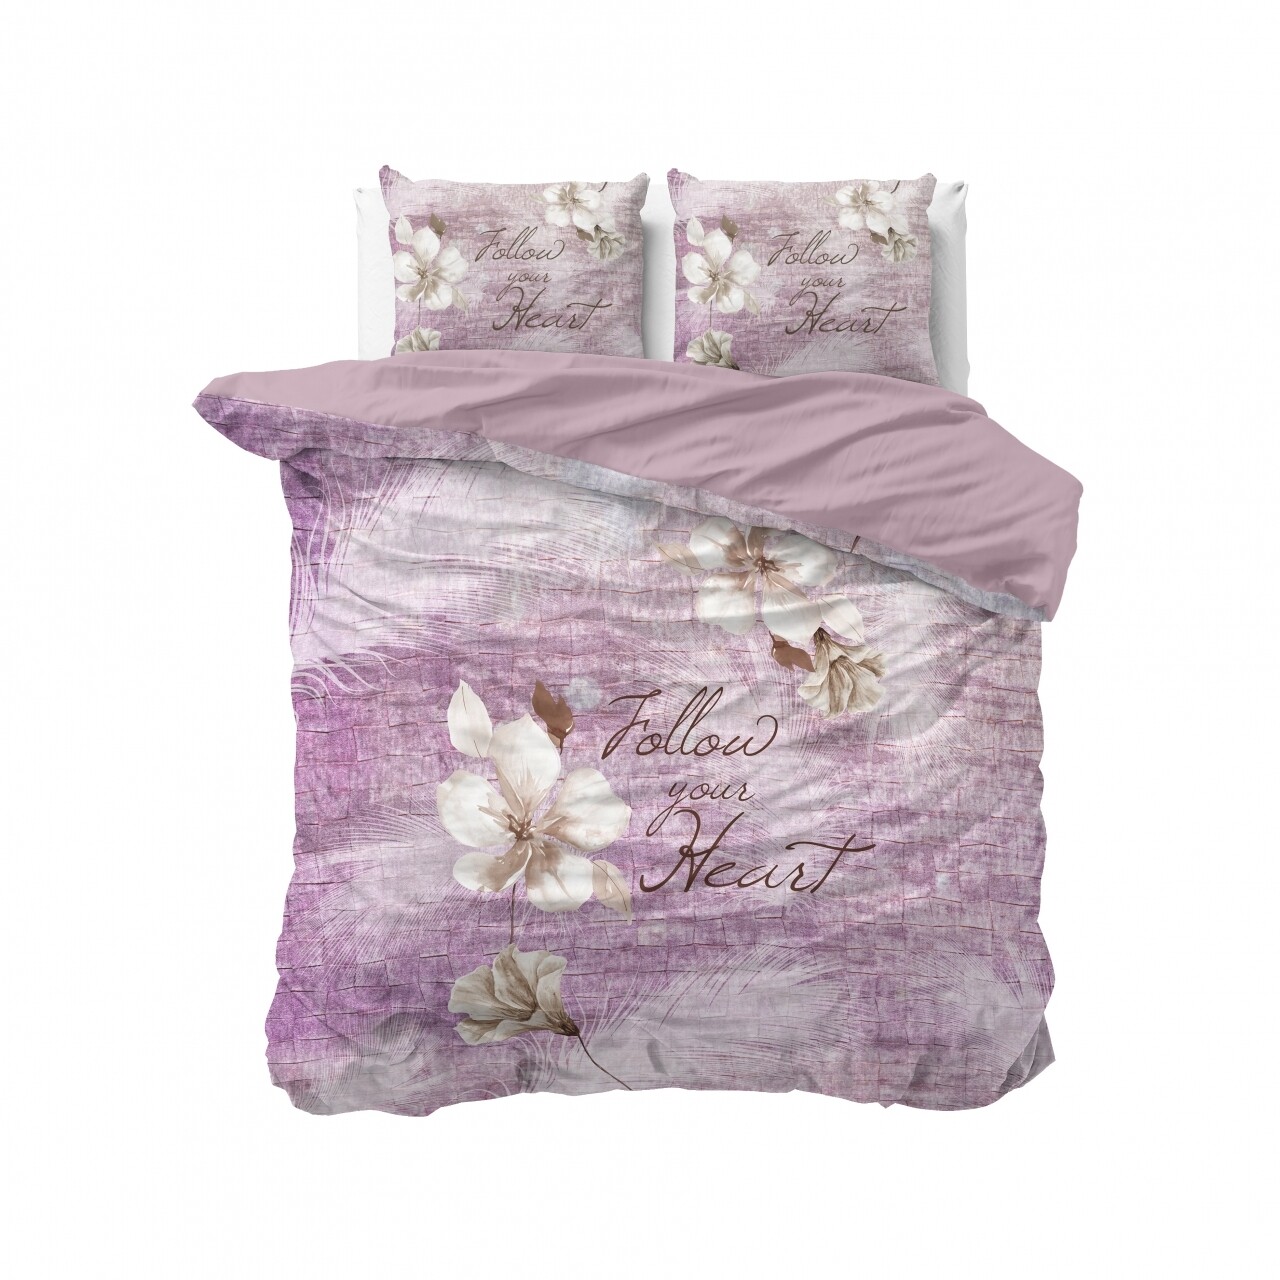 Lenjerie De Pat Dubla Blossom 2 Purple, Royal Textile,3 Piese, 200 X 220 Cm, 100% Bumbac, Multicolora